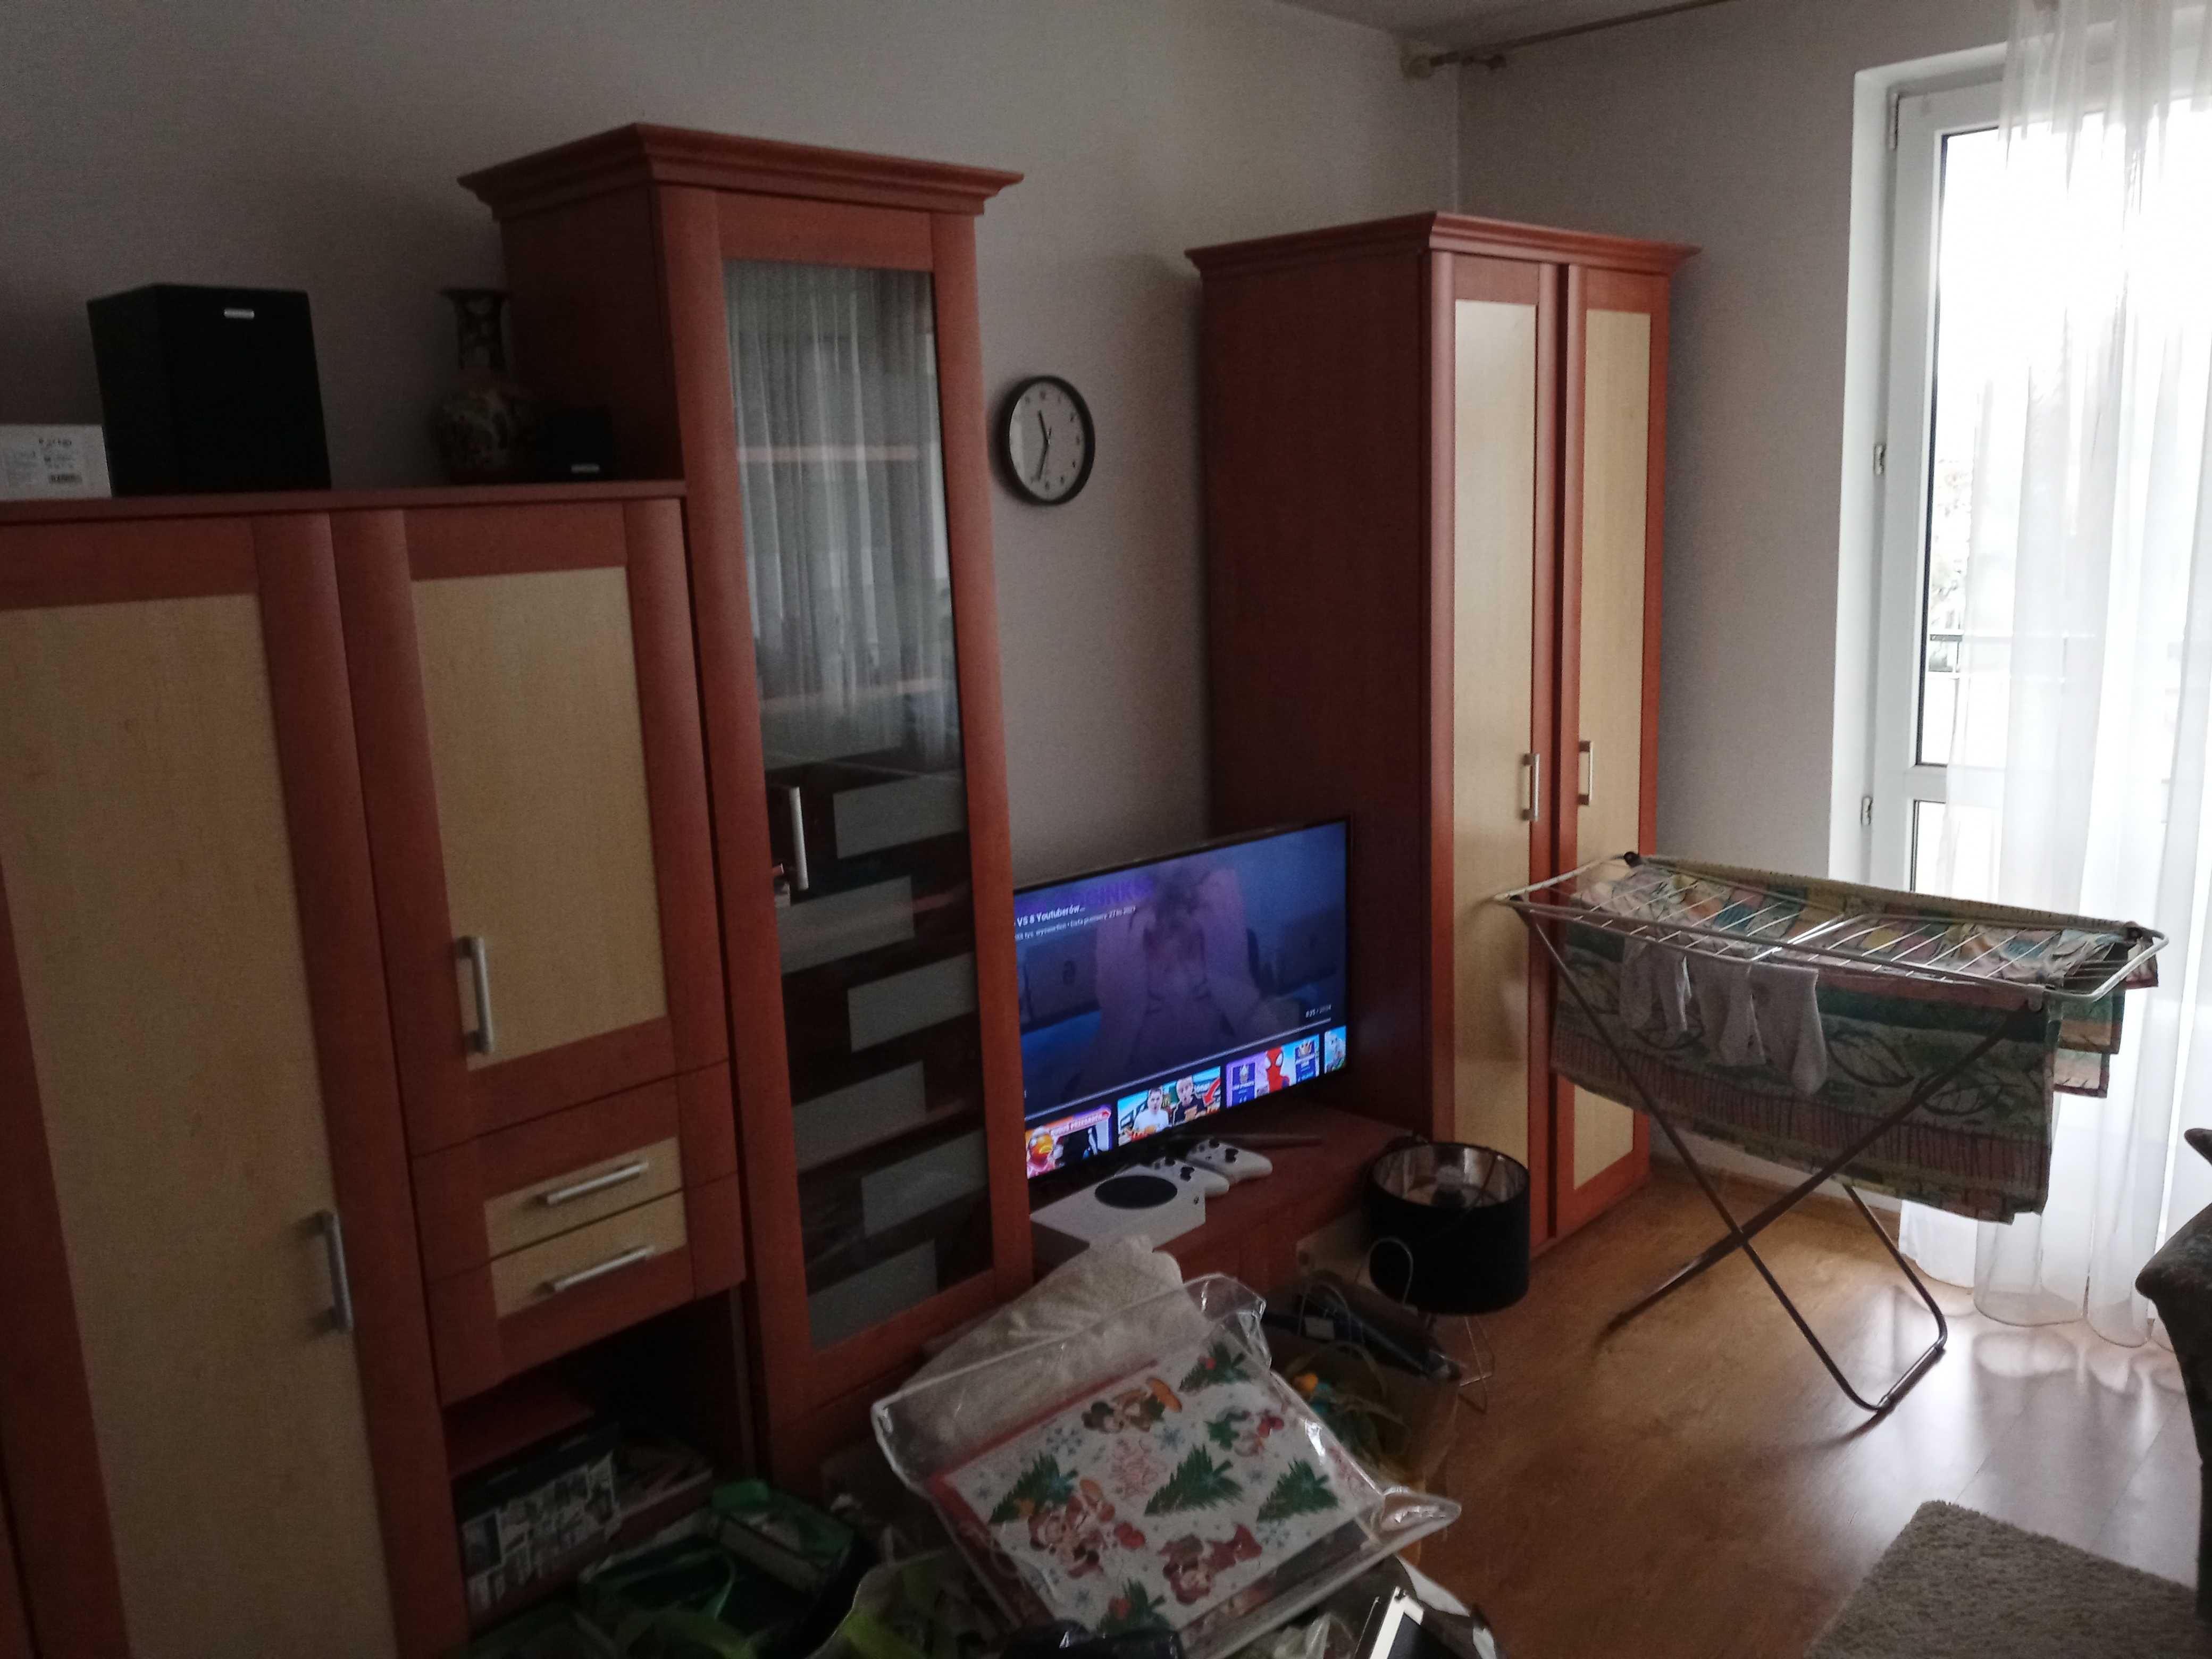 mieszkanie 2-pokojowe do wynajęcia przy ul.zaplecznej